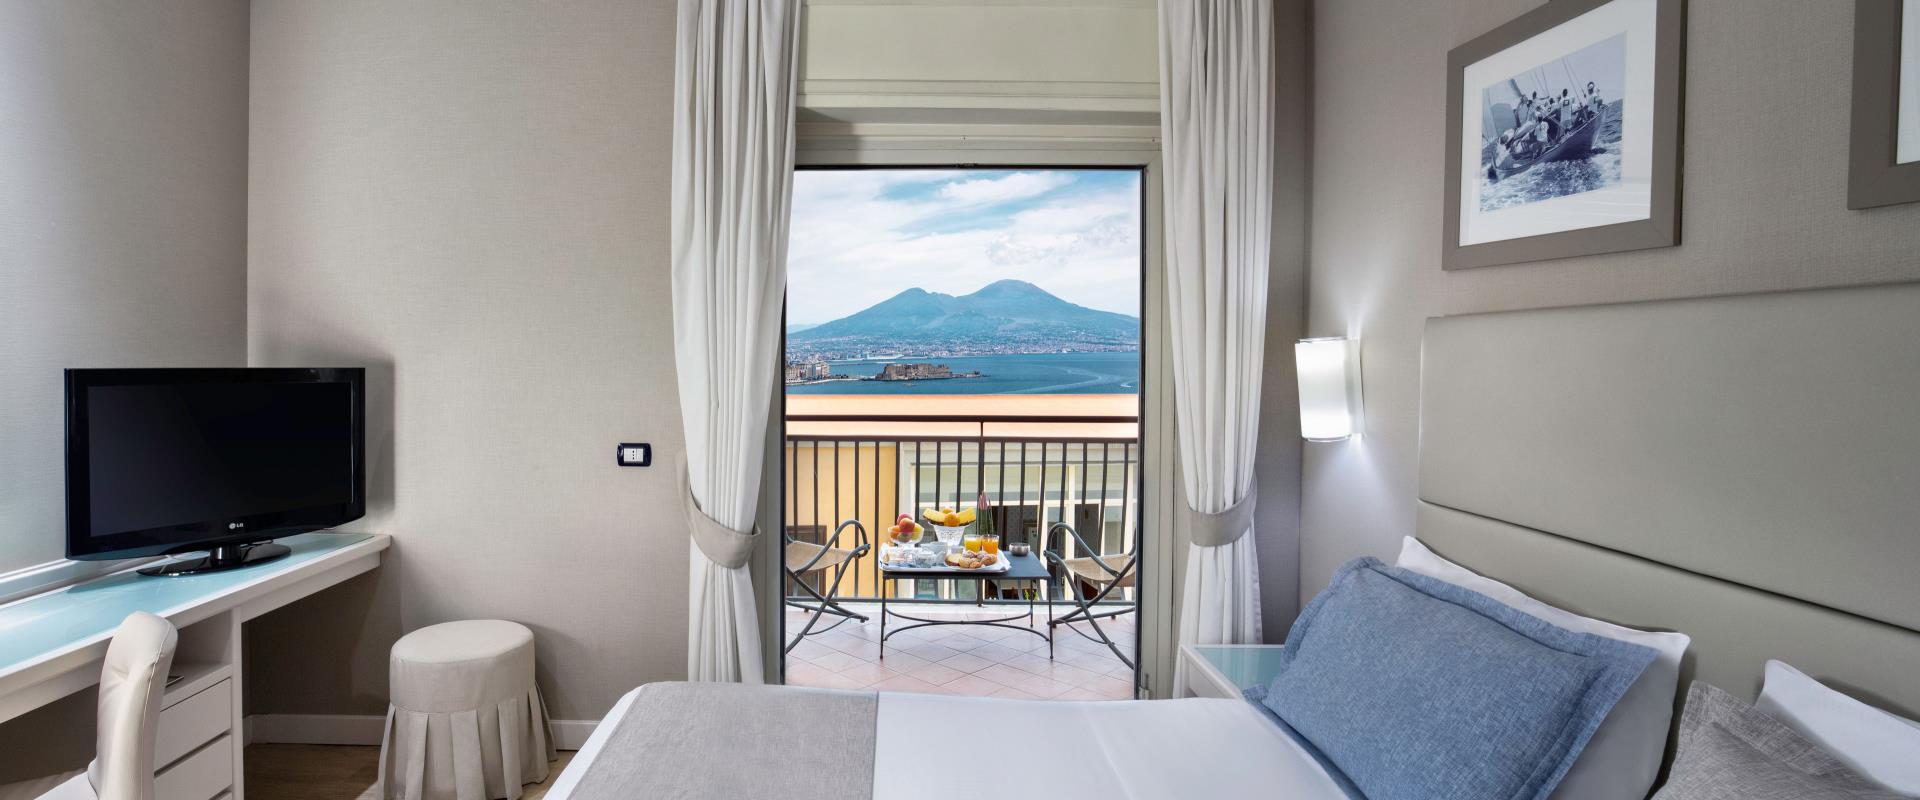 Découvrez les chambres Vue partielle sur la mer de l’Hôtel Paradiso de Naples!